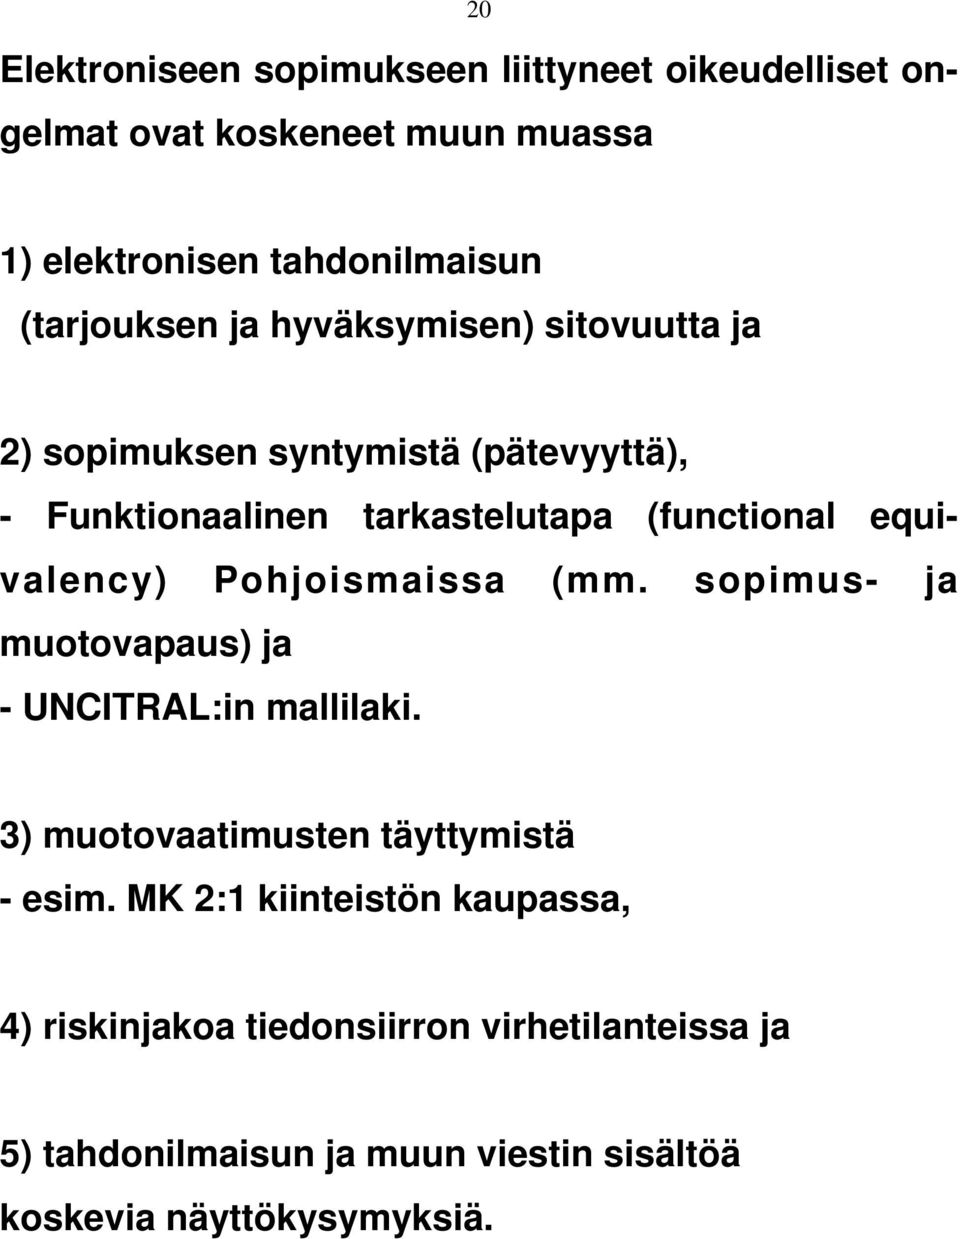 equivalency) Pohjoismaissa (mm. sopimus- ja muotovapaus) ja - UNCITRAL:in mallilaki. 3) muotovaatimusten täyttymistä - esim.